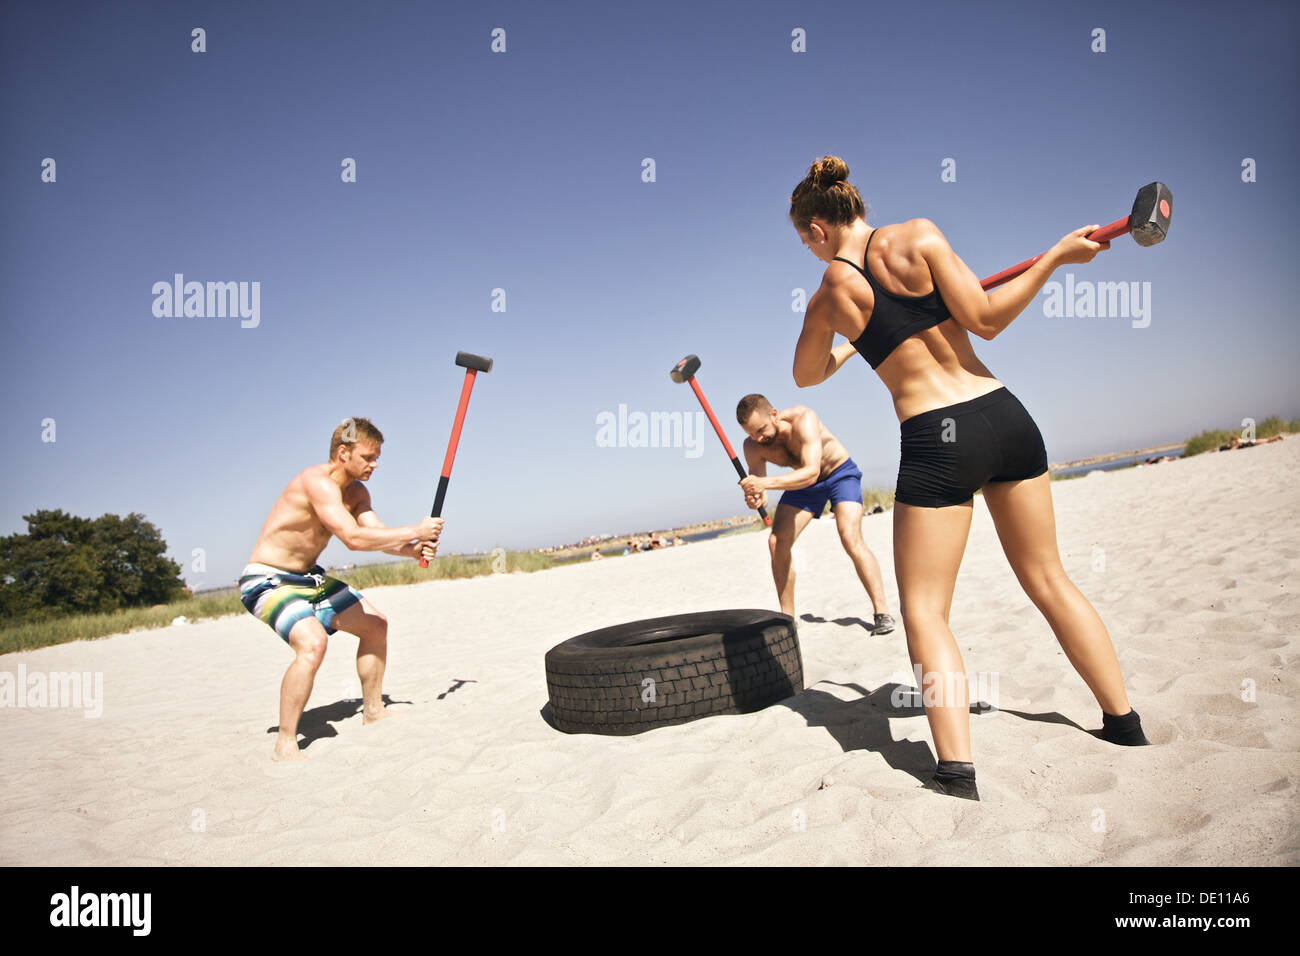 Forte di tre atleti facendo colpo di martello su un carrello pneumatico durante esercizio crossfit fuori sulla spiaggia Foto Stock